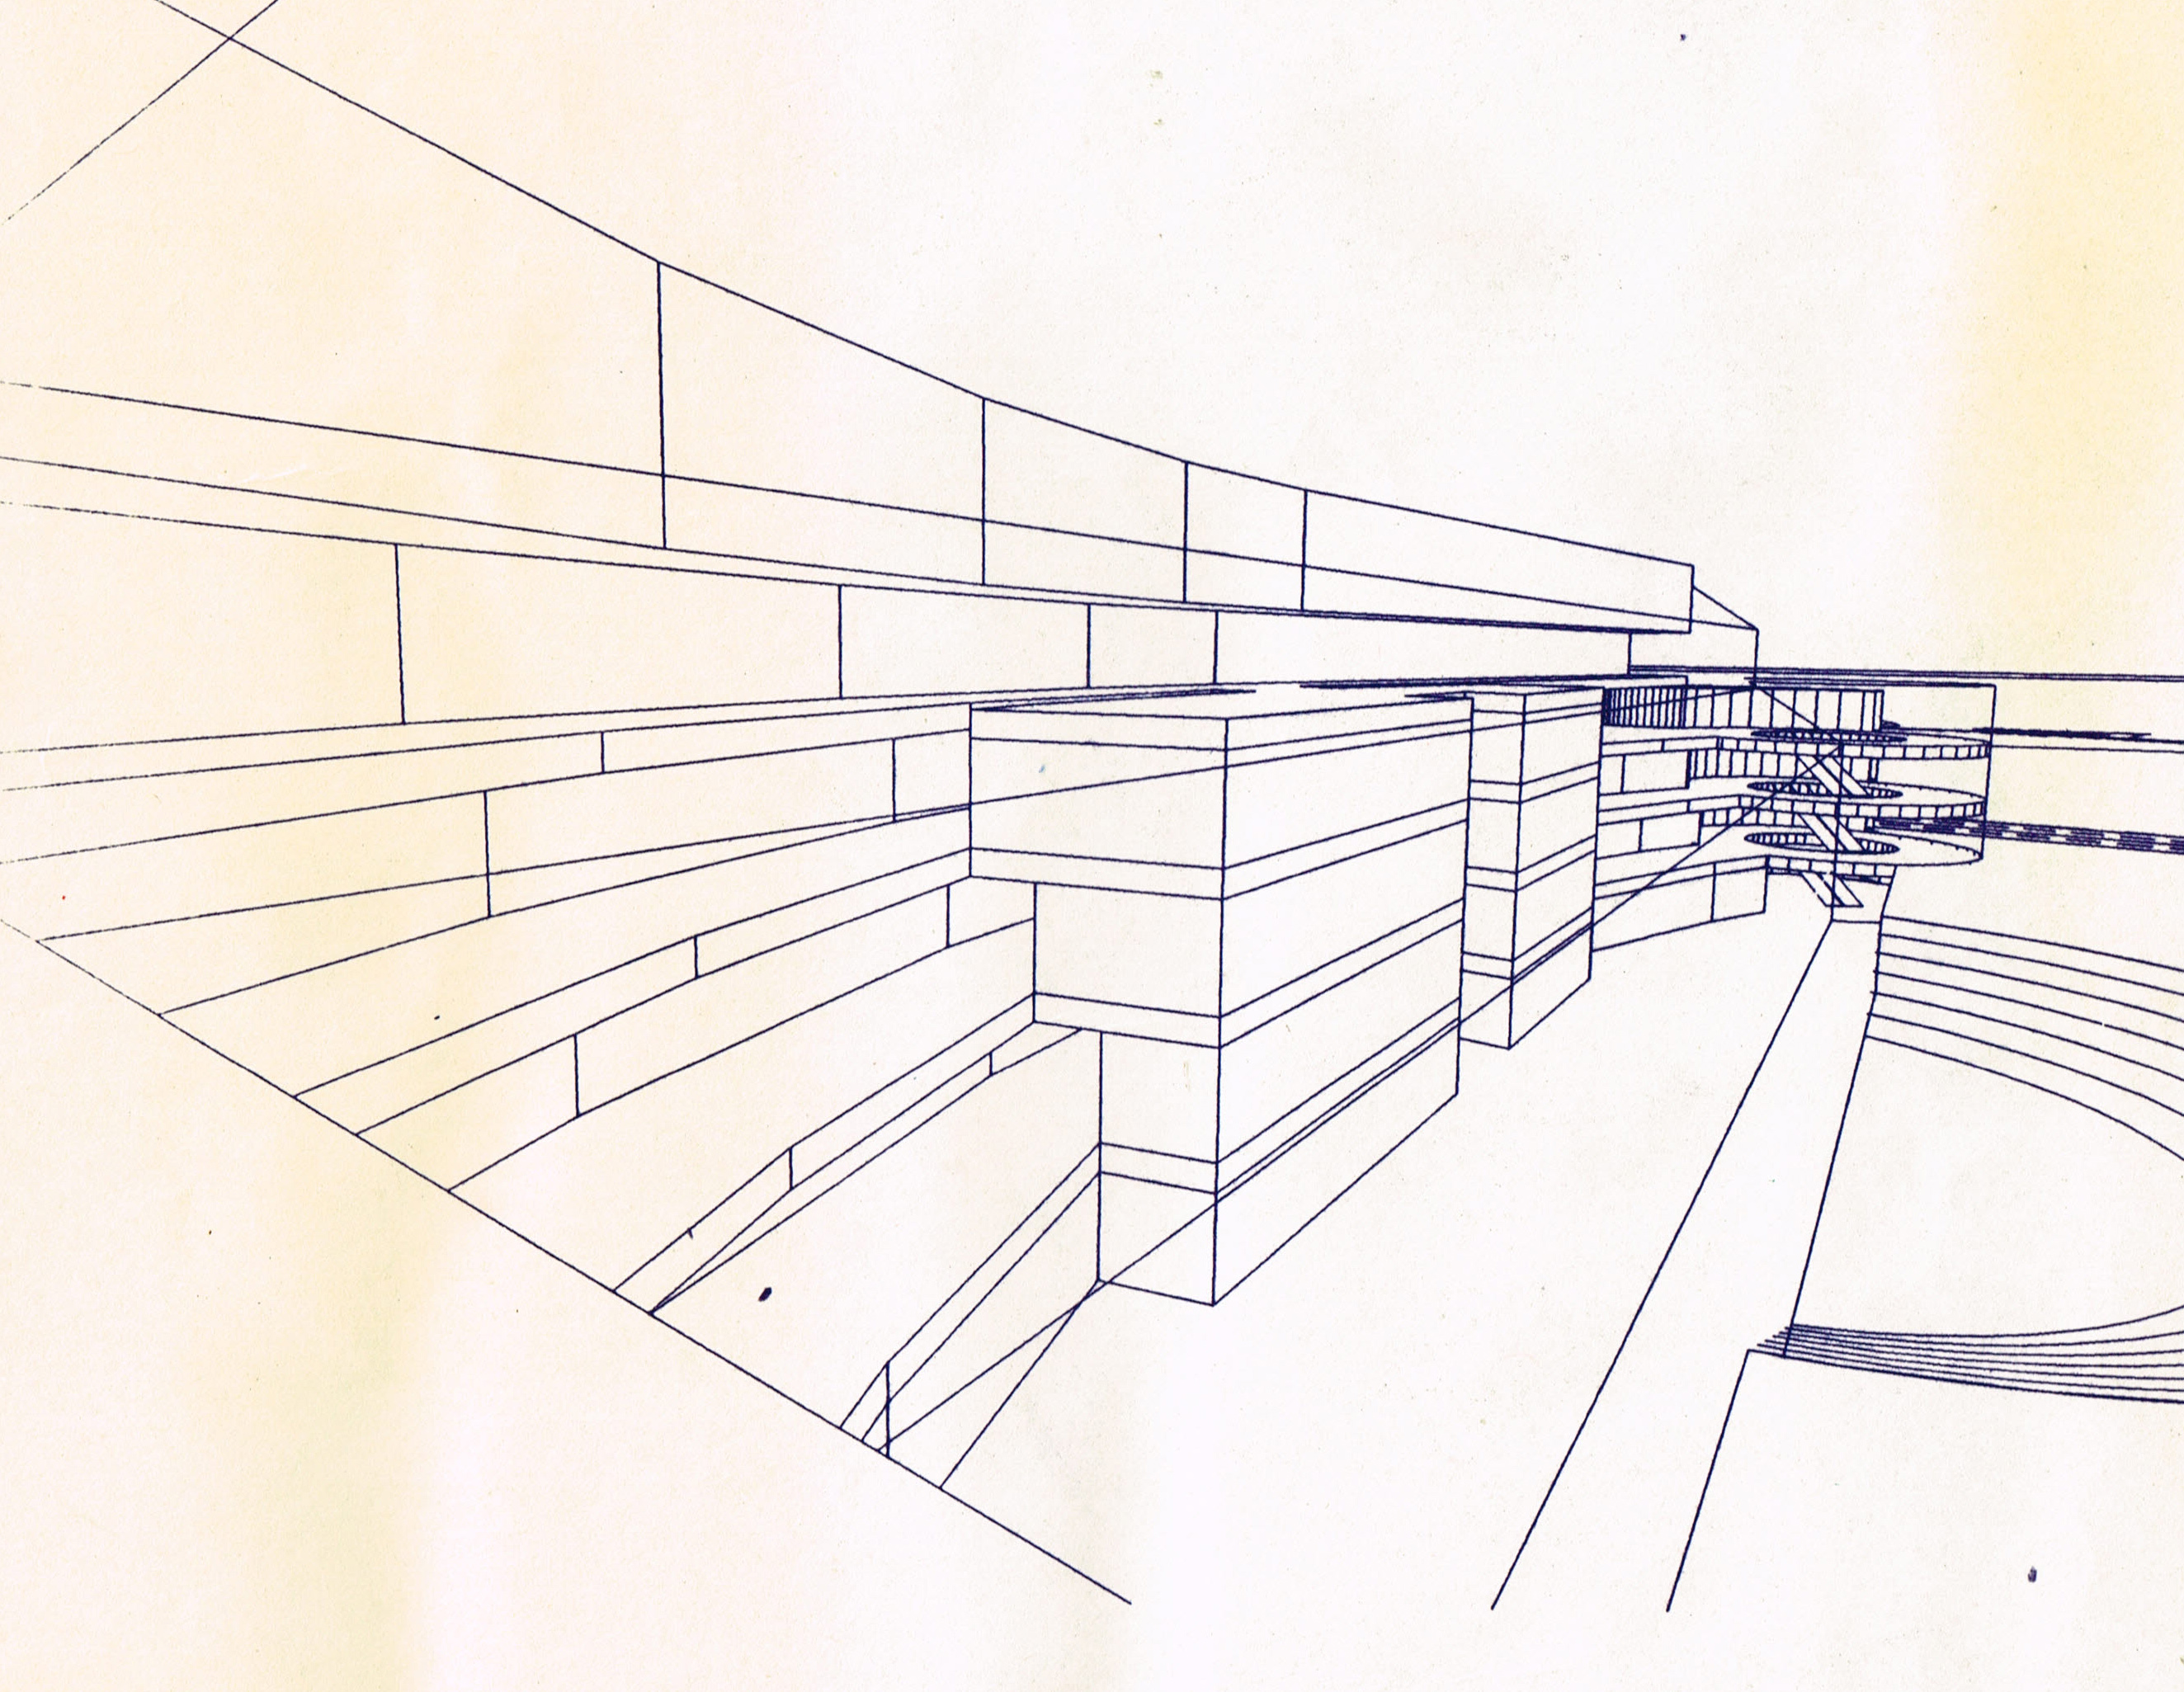 大江購物中心設計構想階段的量體配置